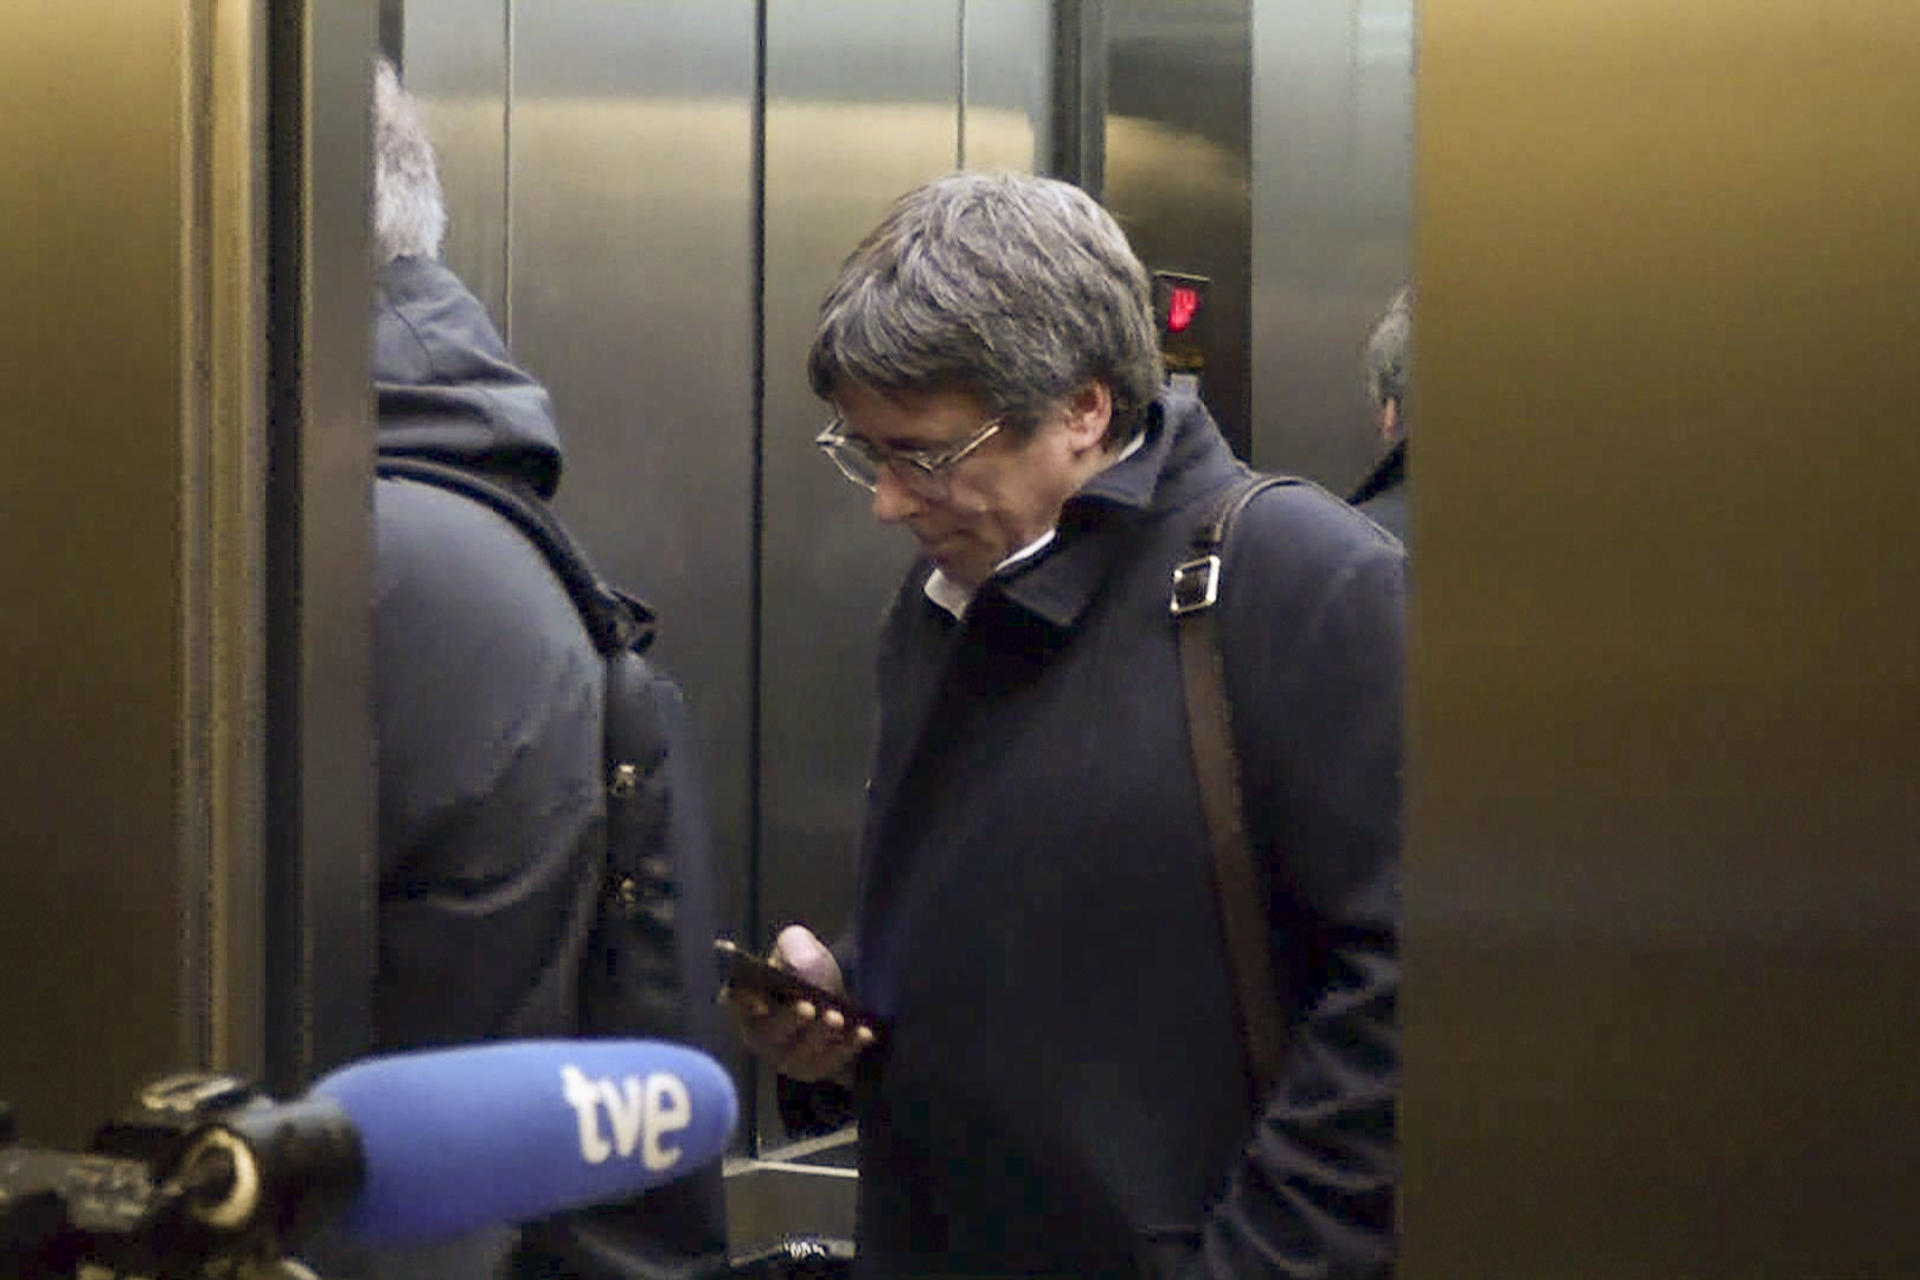 La Junta de Fiscales analiza el informe que no ve indicios delictivos contra Puigdemont